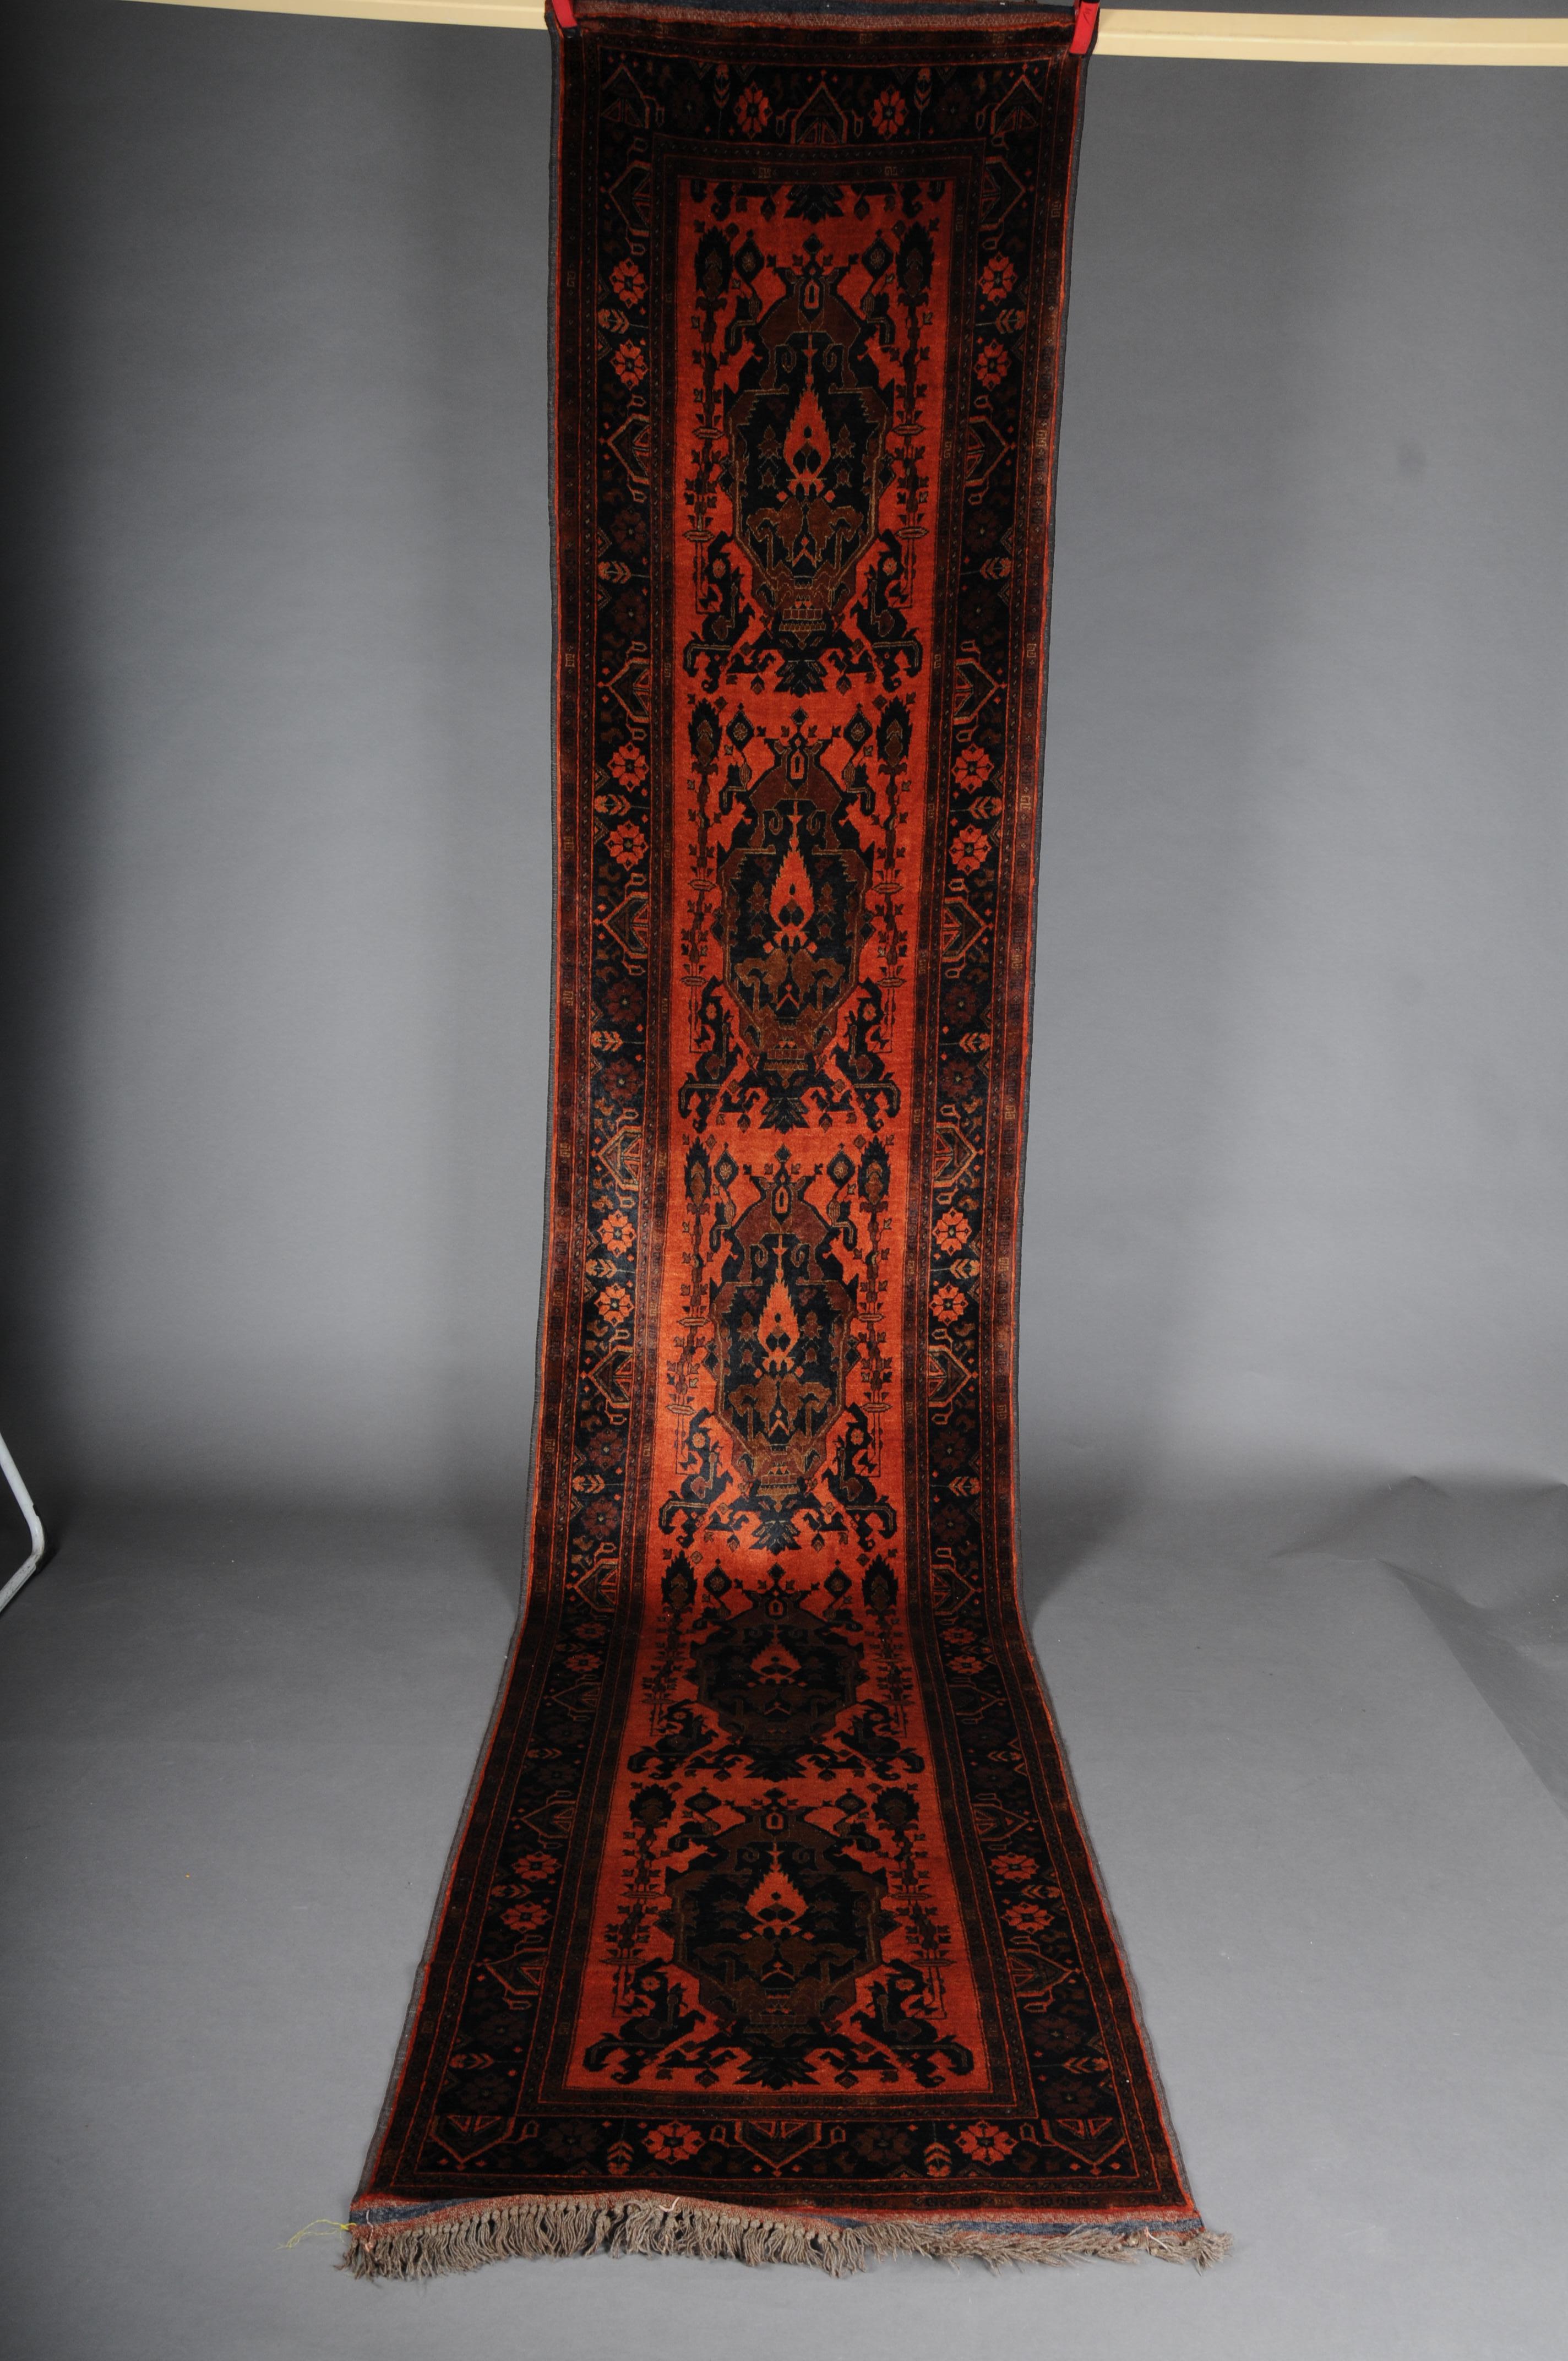 Turkman-Läufer / Seide, 20. Jahrhundert.

Roter Hintergrund mit typischem Turkman-Muster. Sehr elegant und hochwertig verarbeitet.
